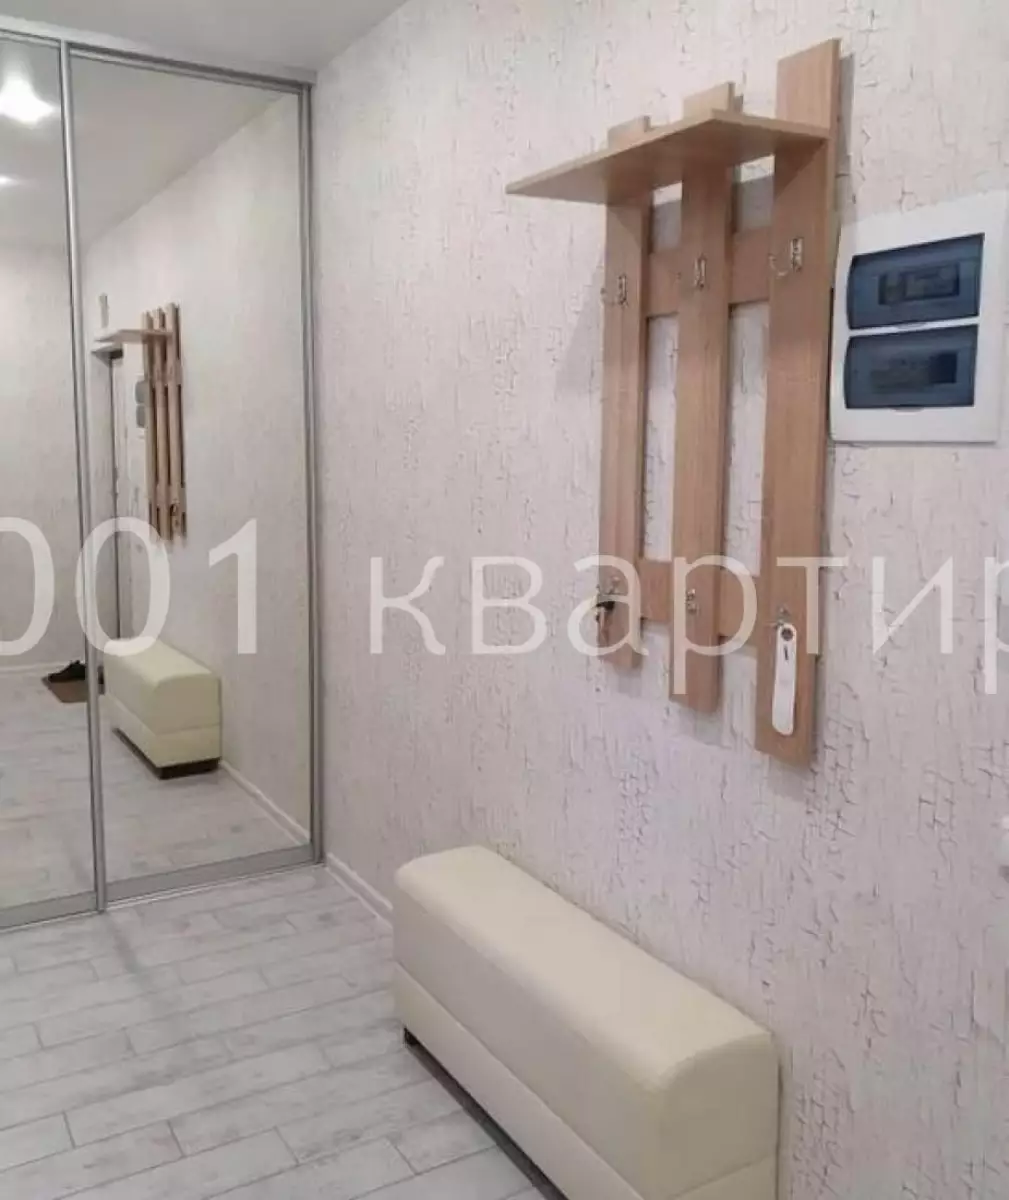 Вариант #137793 для аренды посуточно в Самаре Артёмовская , д.22 на 5 гостей - фото 3